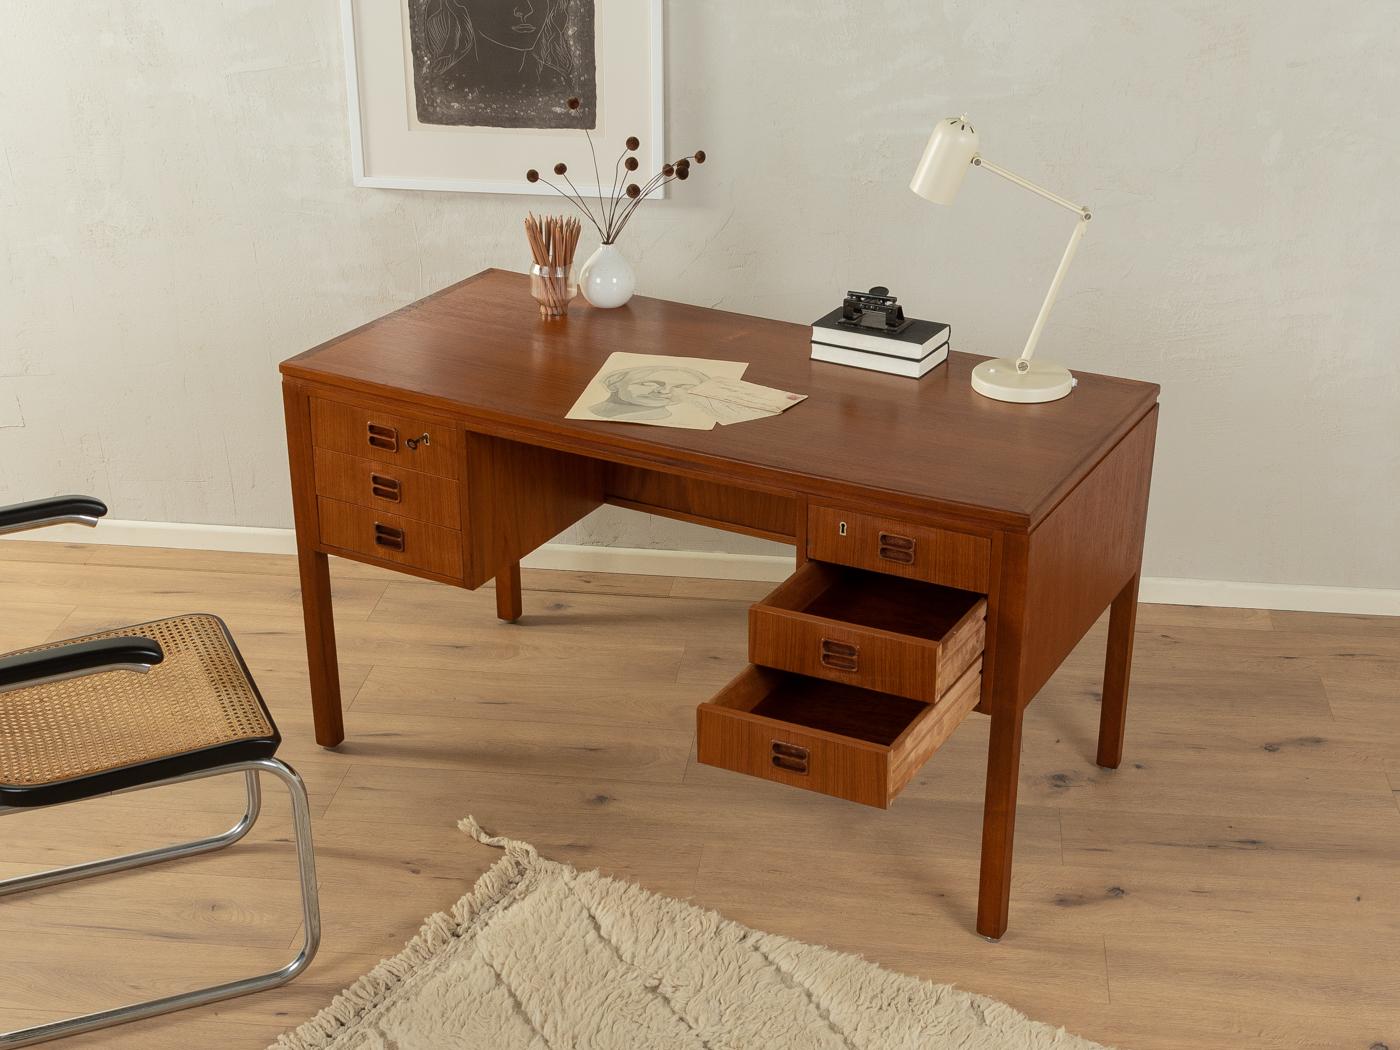 Klassischer freistehender Schreibtisch aus den 1960er Jahren von Tibergaard. Hochwertiger Korpus in Teakholzfurnier mit sechs Schubladen, einem Bücherregal auf der Rückseite und Massivholzbeinen.
Tischunterkante 70 cm

Qualitätsmerkmale:
   